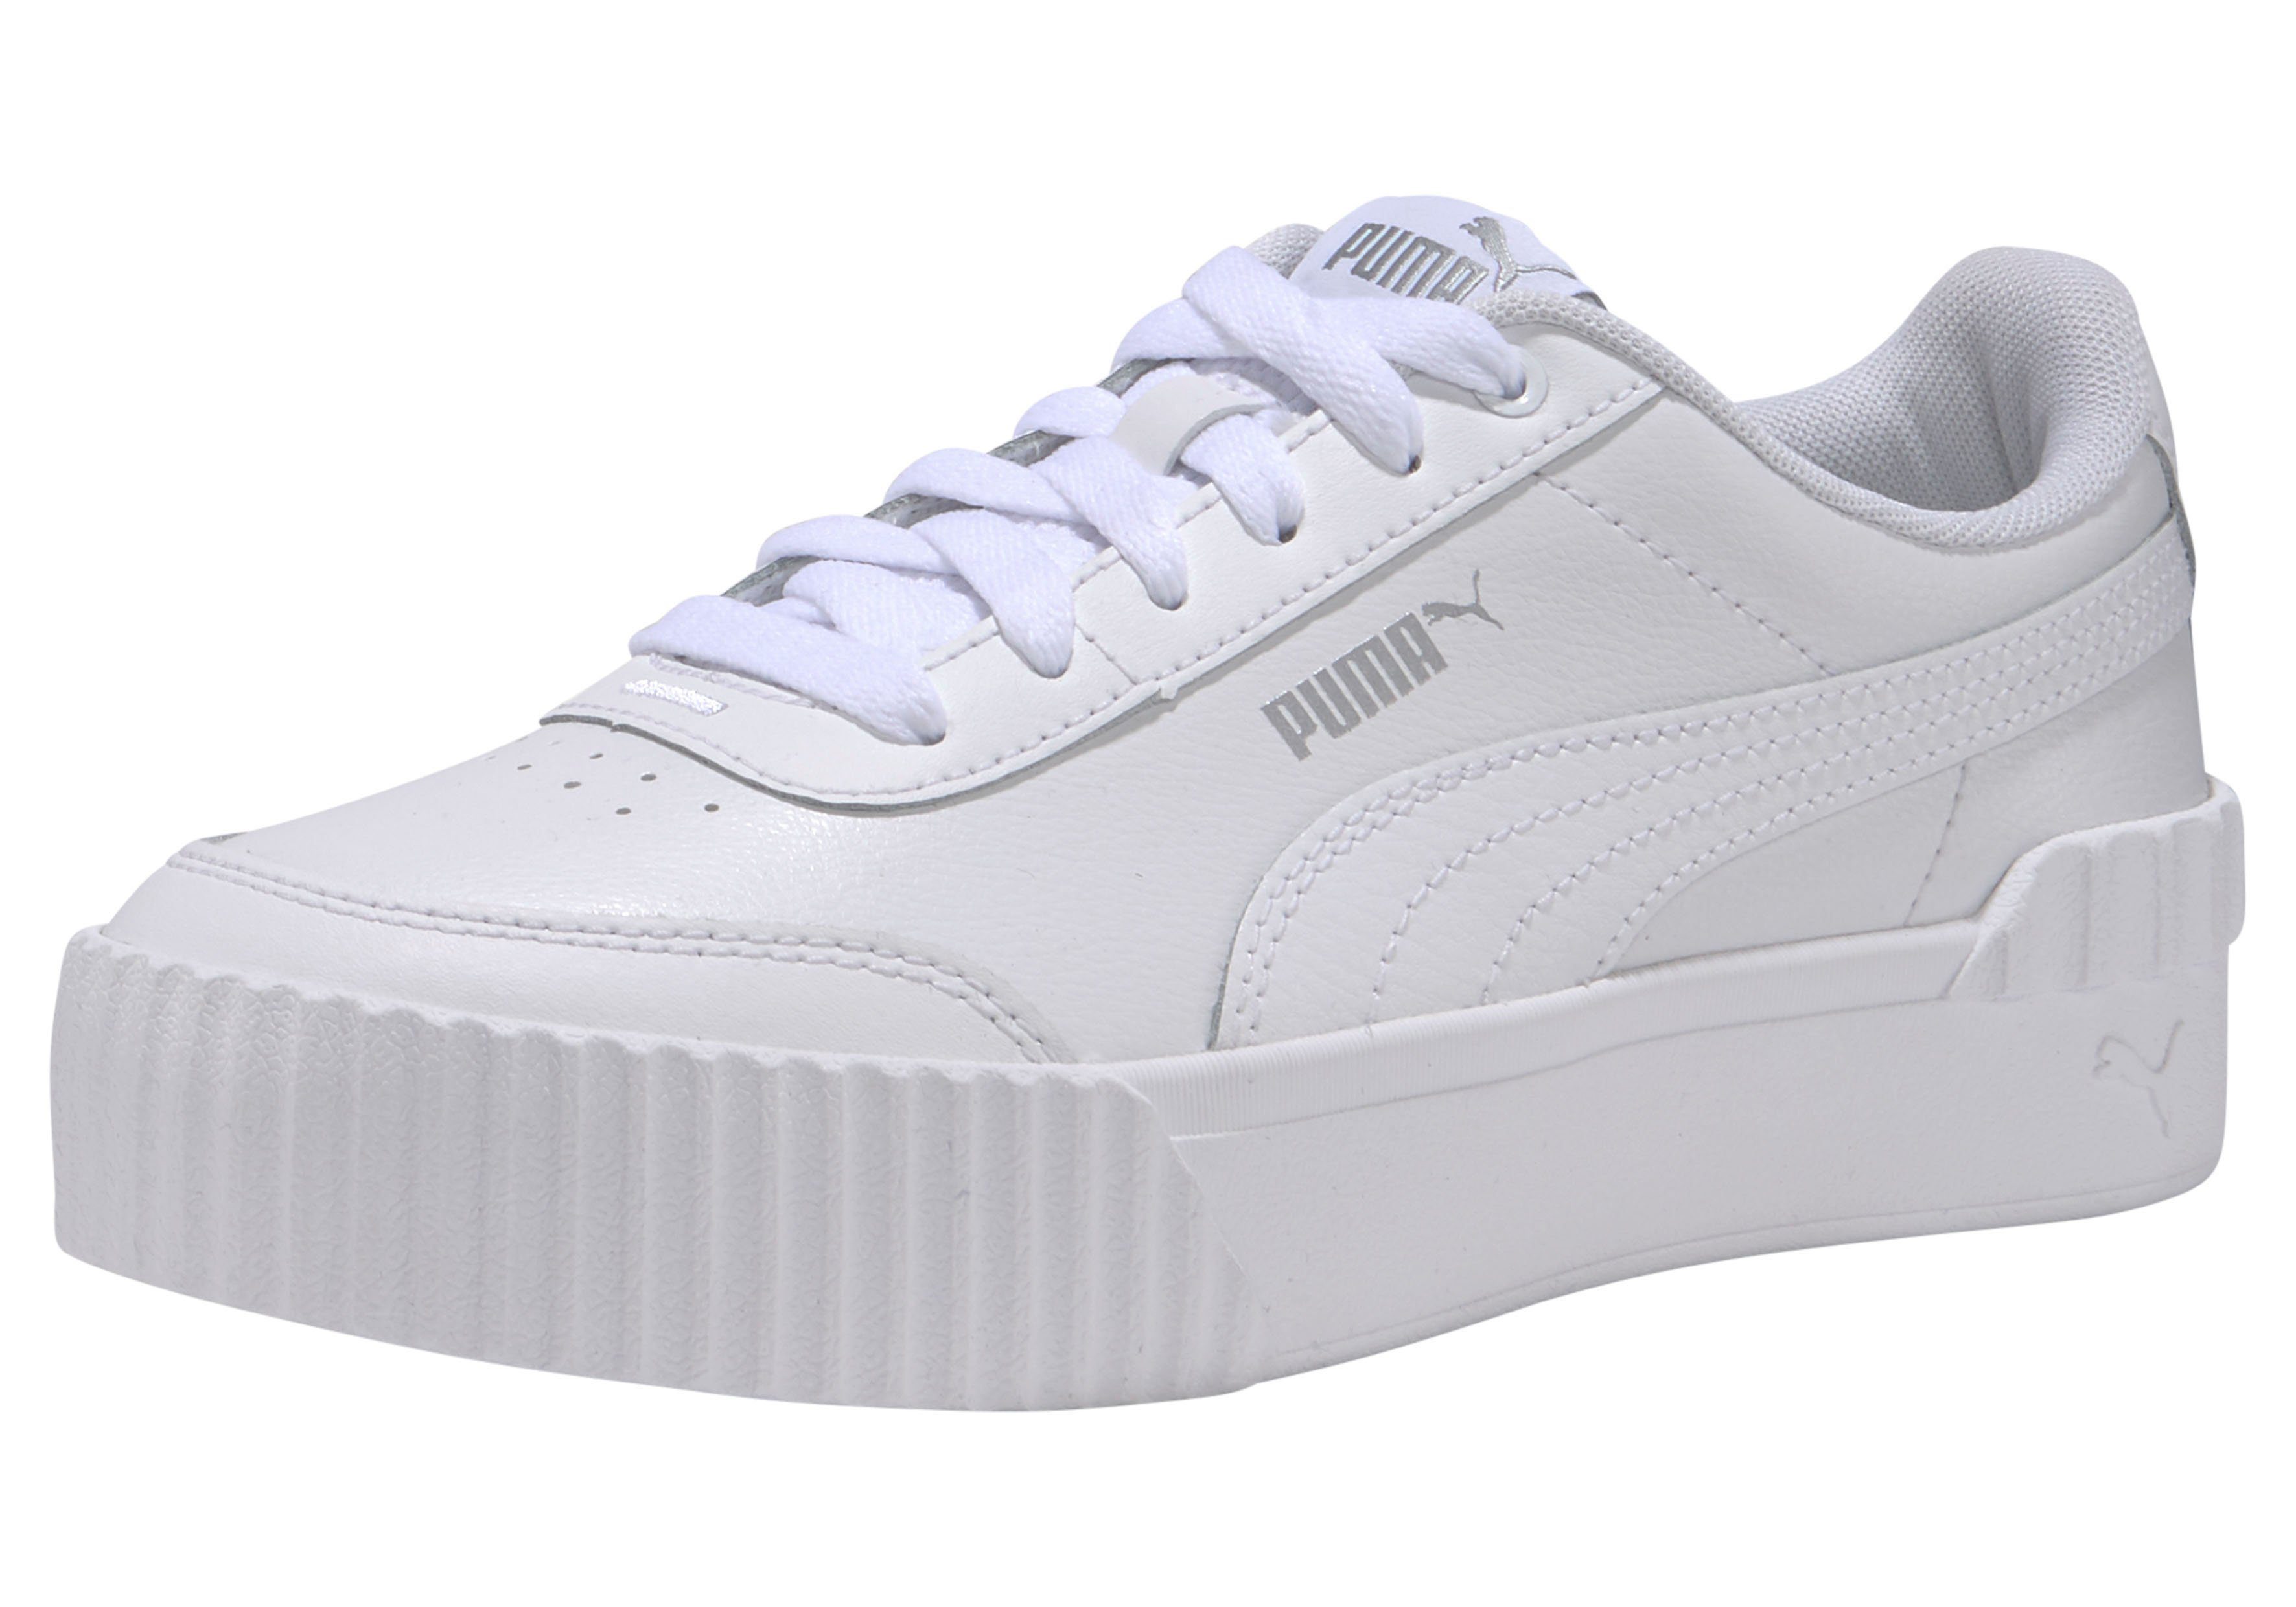 Weiße PUMA Damen Plateau Sneaker online kaufen | OTTO